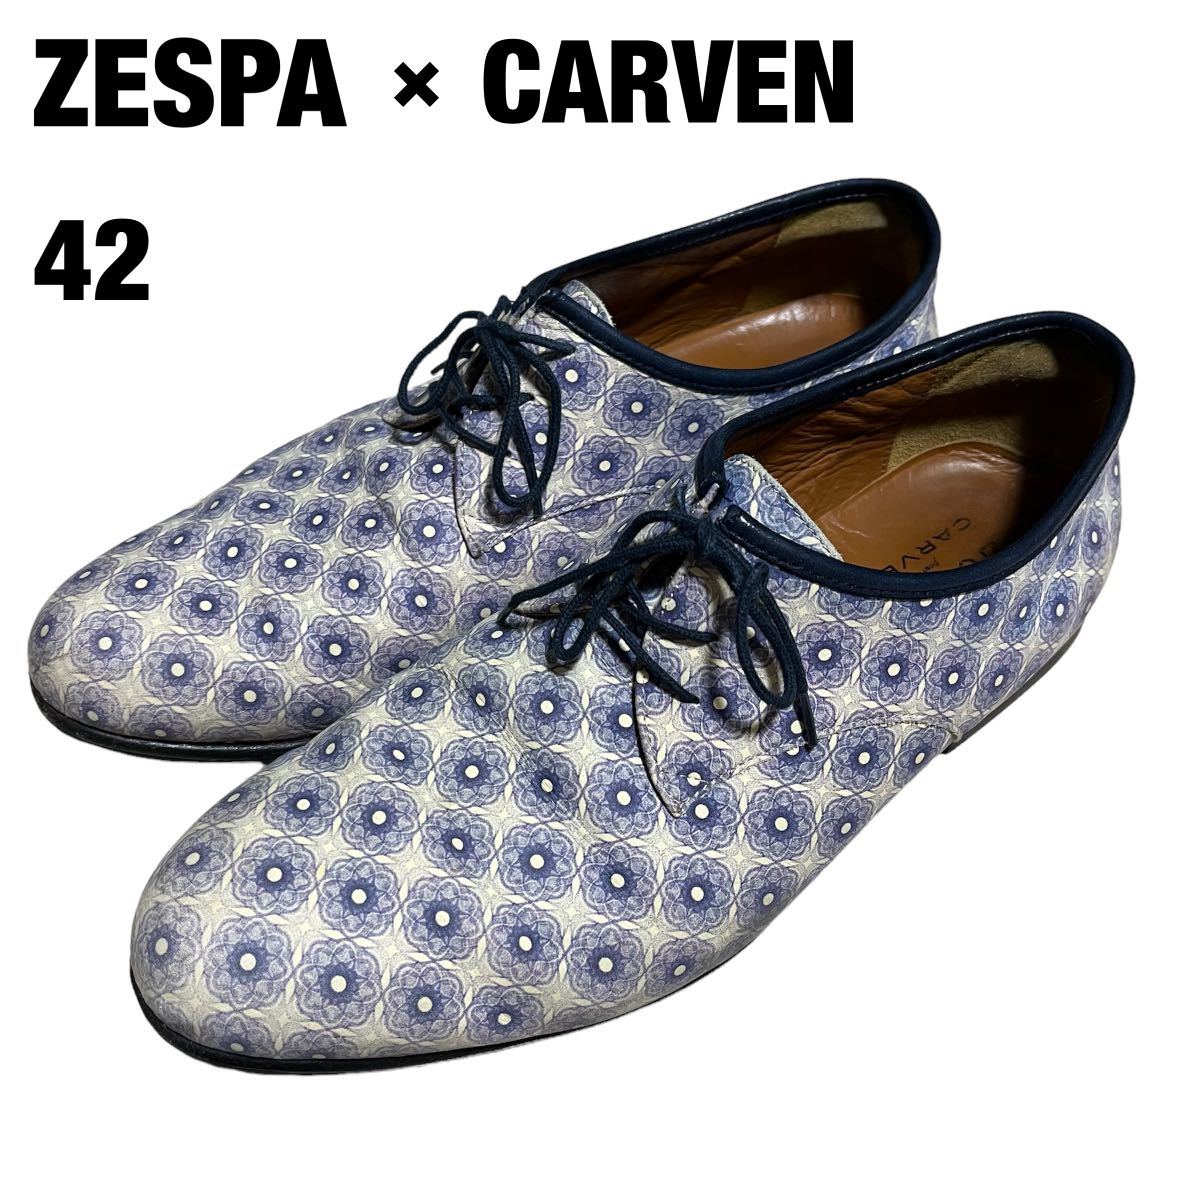 フランス製 ZESPA × CARVEN ゼスパ カルヴェン 総柄 レースアップ